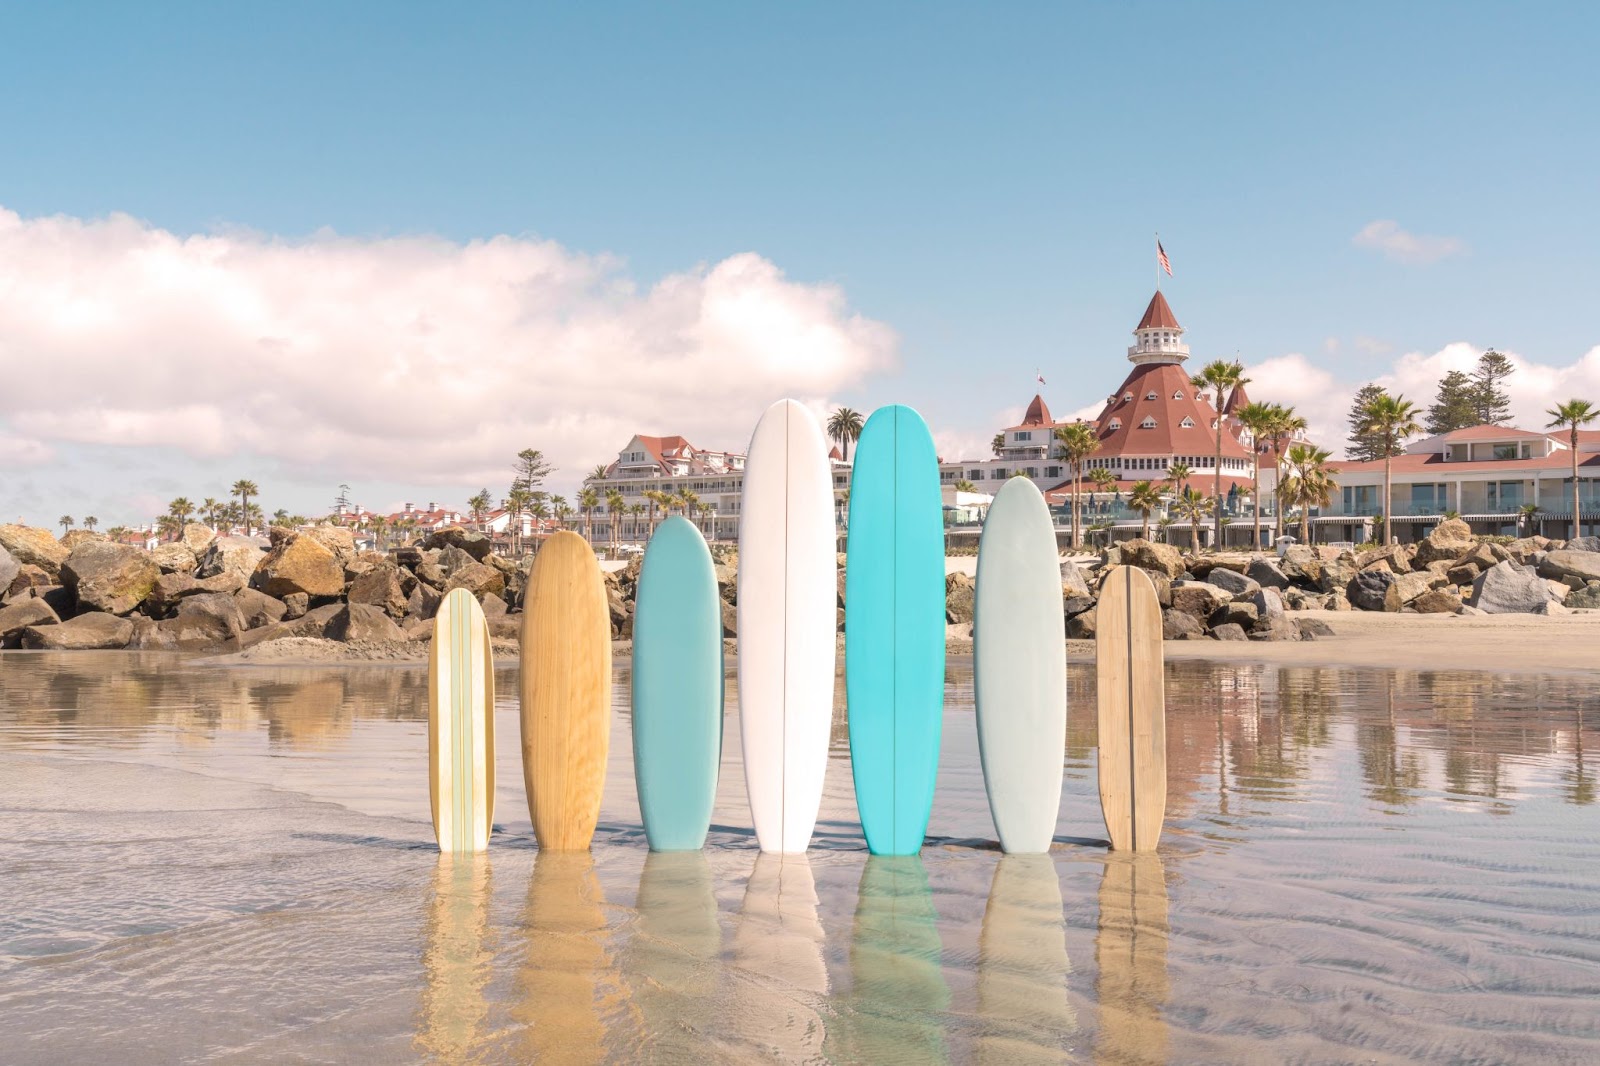 The Surfboards, Hotel del Coronado